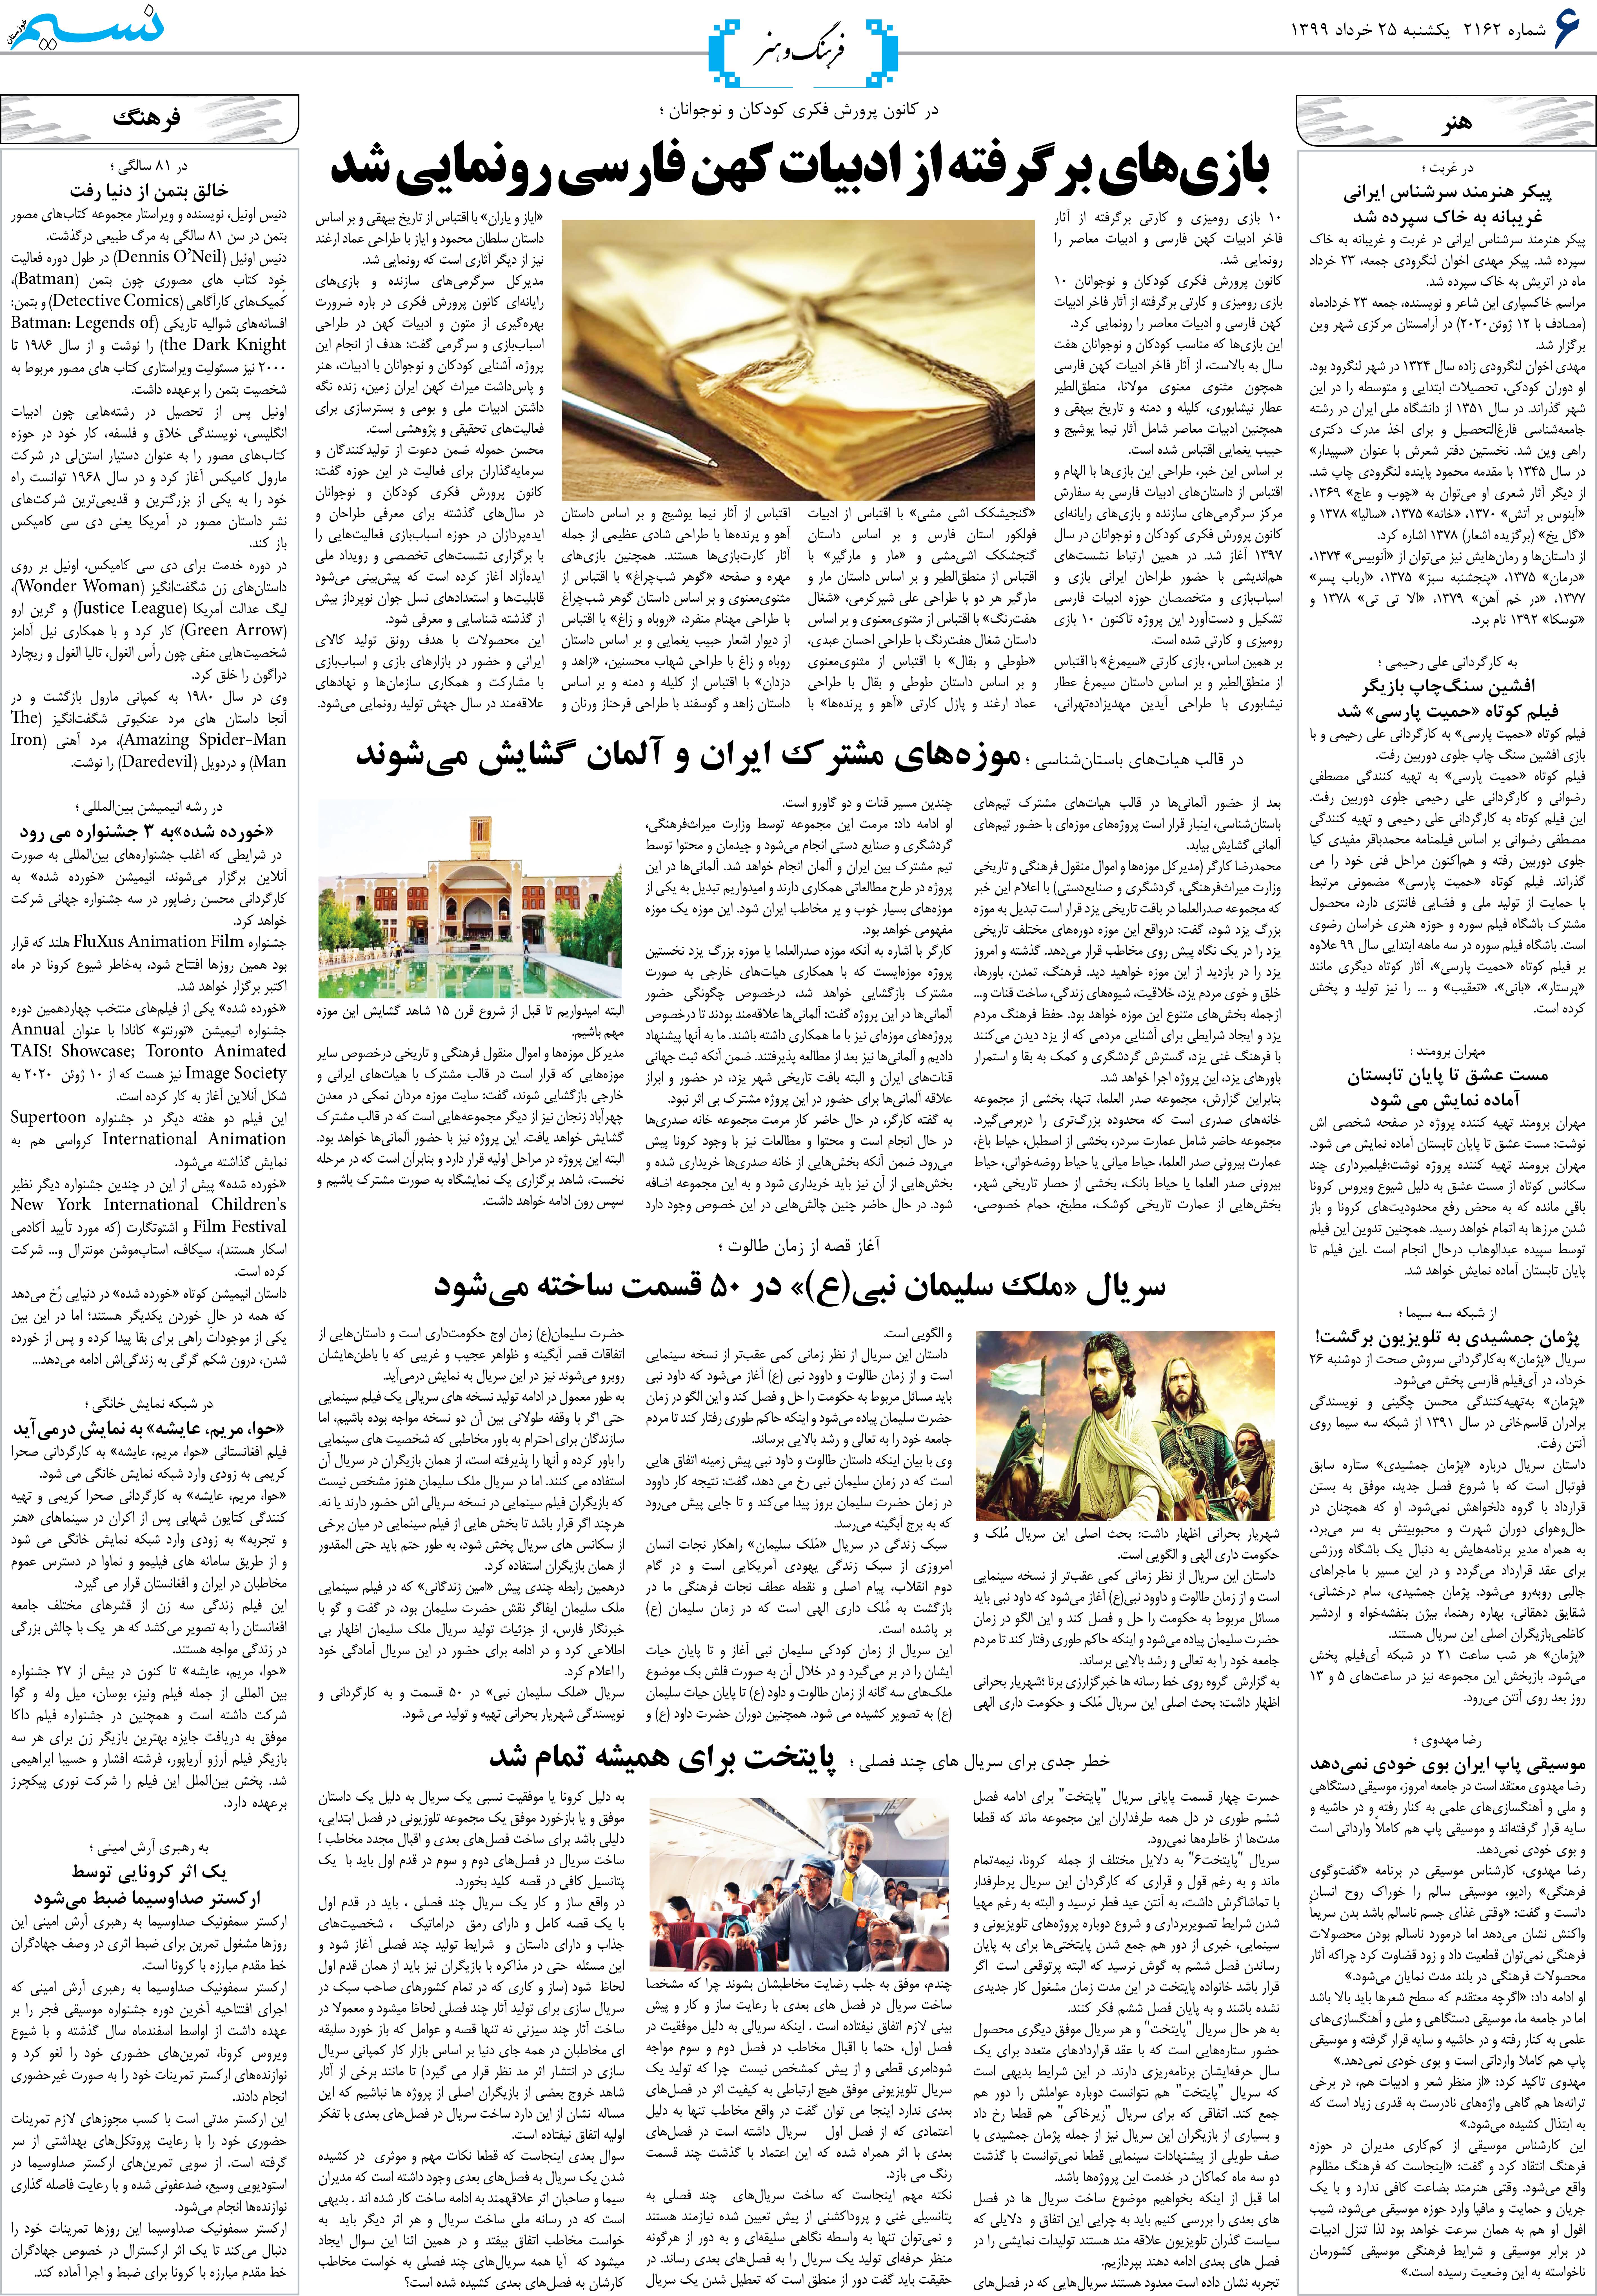 صفحه فرهنگ و هنر روزنامه نسیم شماره 2162